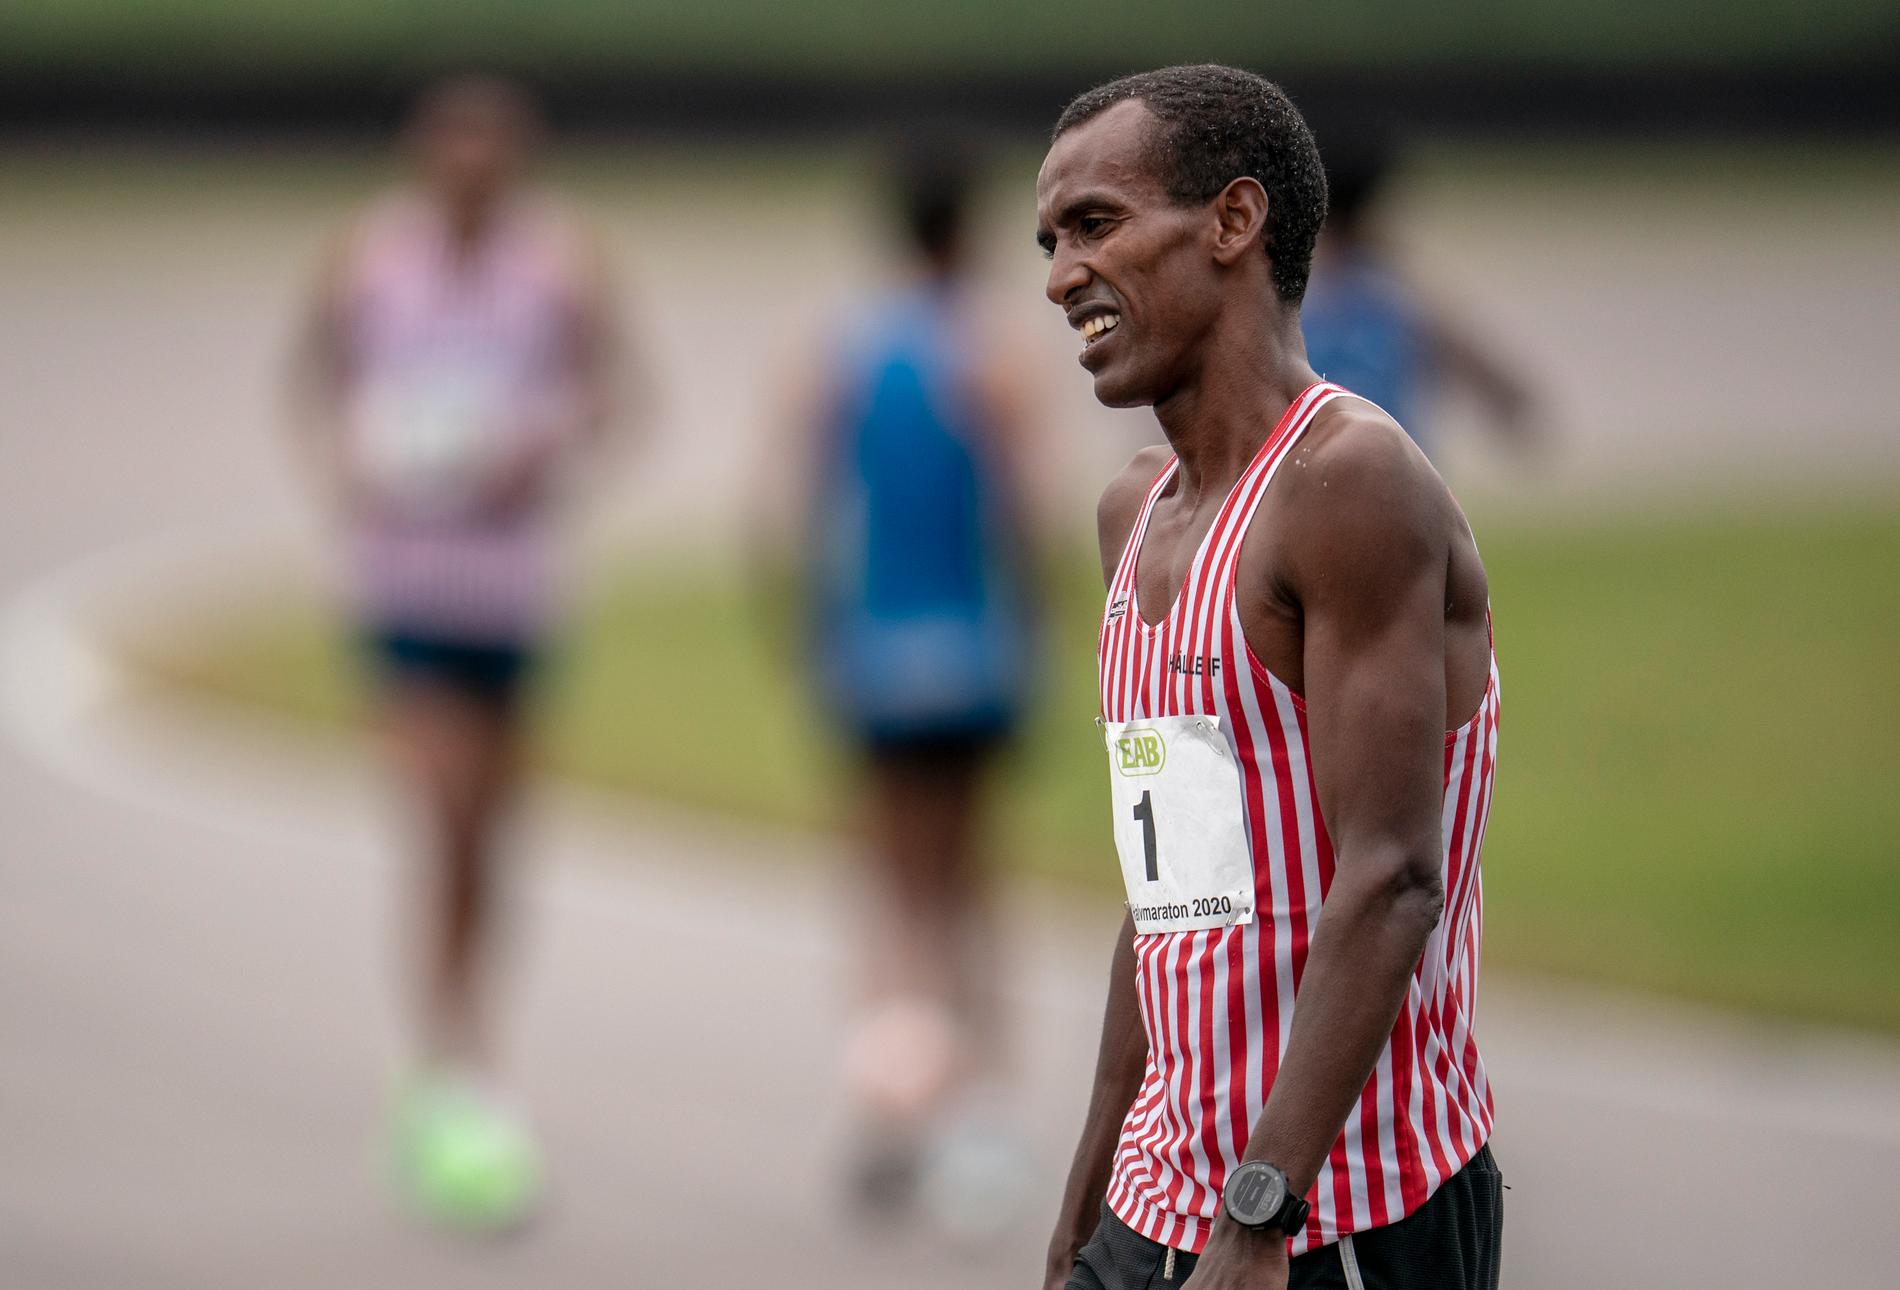 Mustafa "Musse" Mohamed kom på tredje plats i herrarnas SM i halvmaraton på Anderstorp motorbana tidigare i somras.